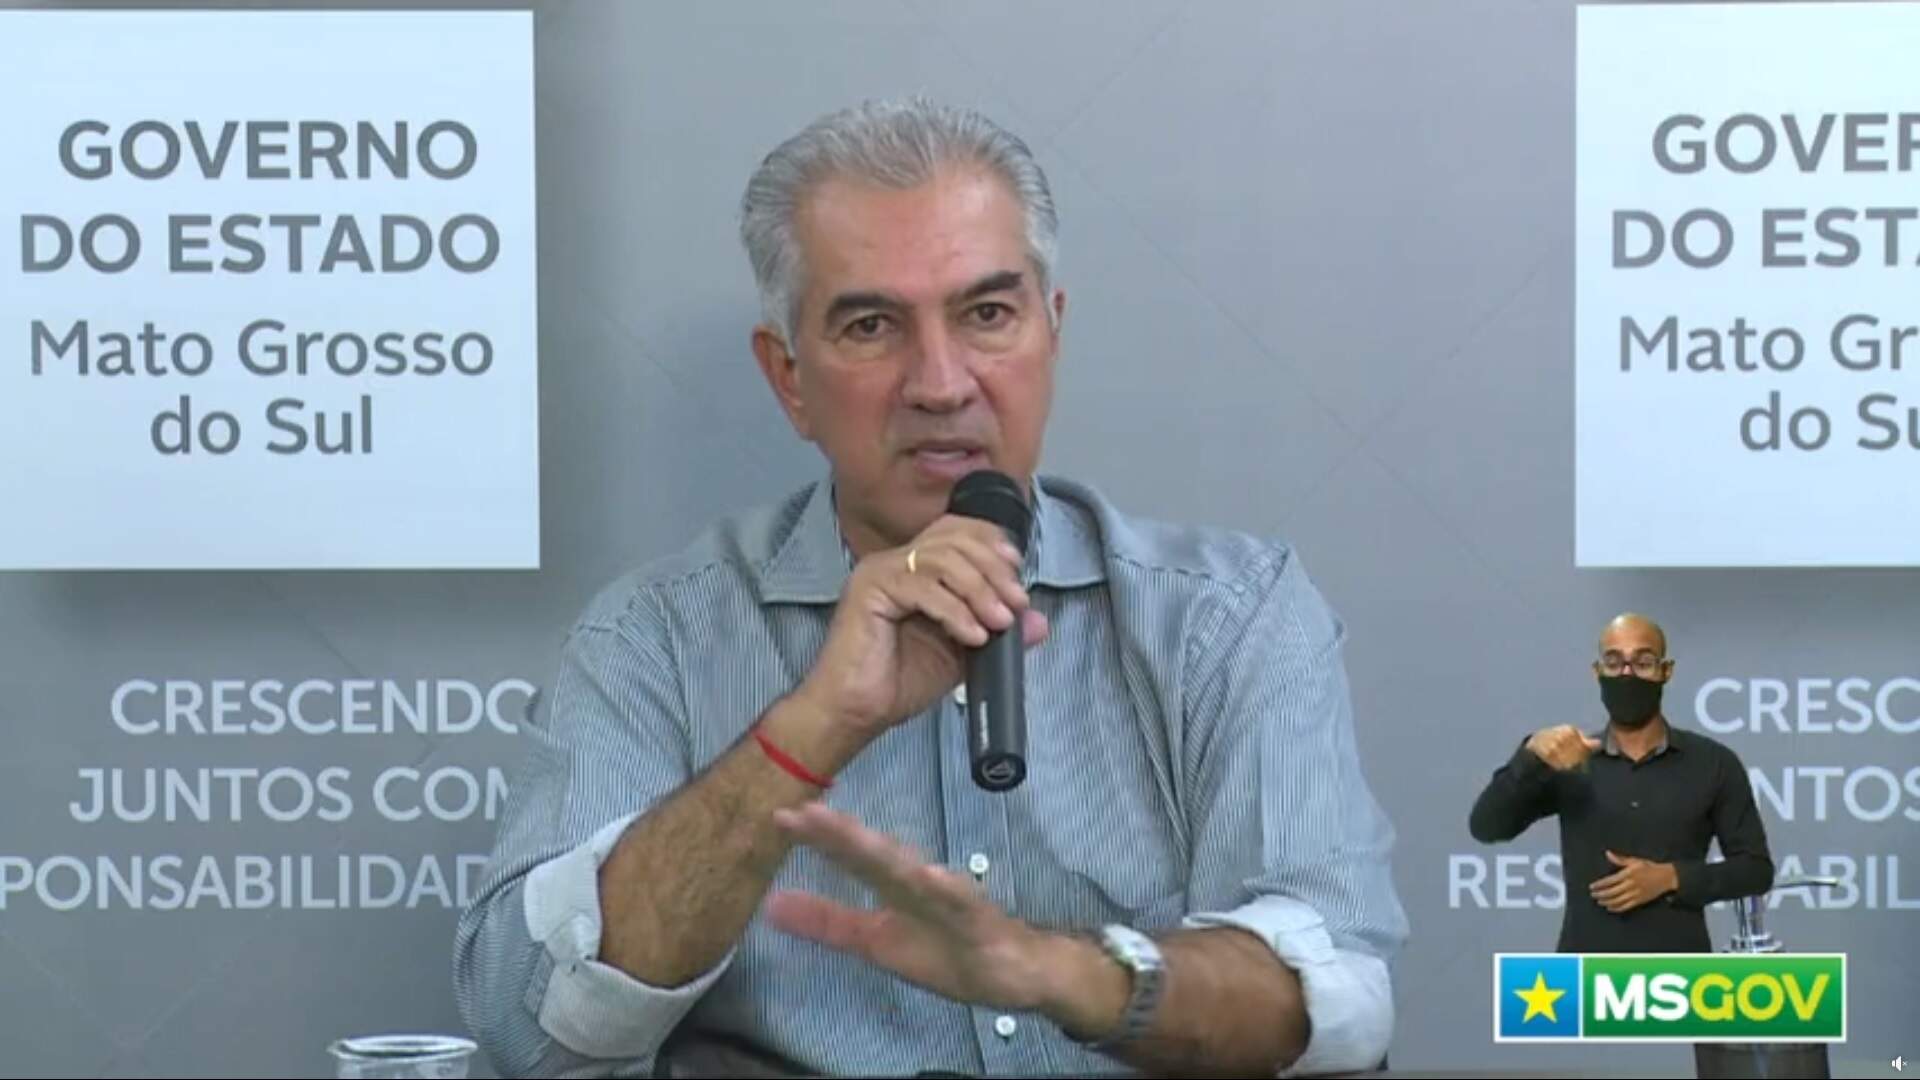 Governador Reinaldo Azambuja (PSDB) questinou o papel da Petrobras no momento de preços exorbitantes dos combustíveis. (Foto: Reprodução)